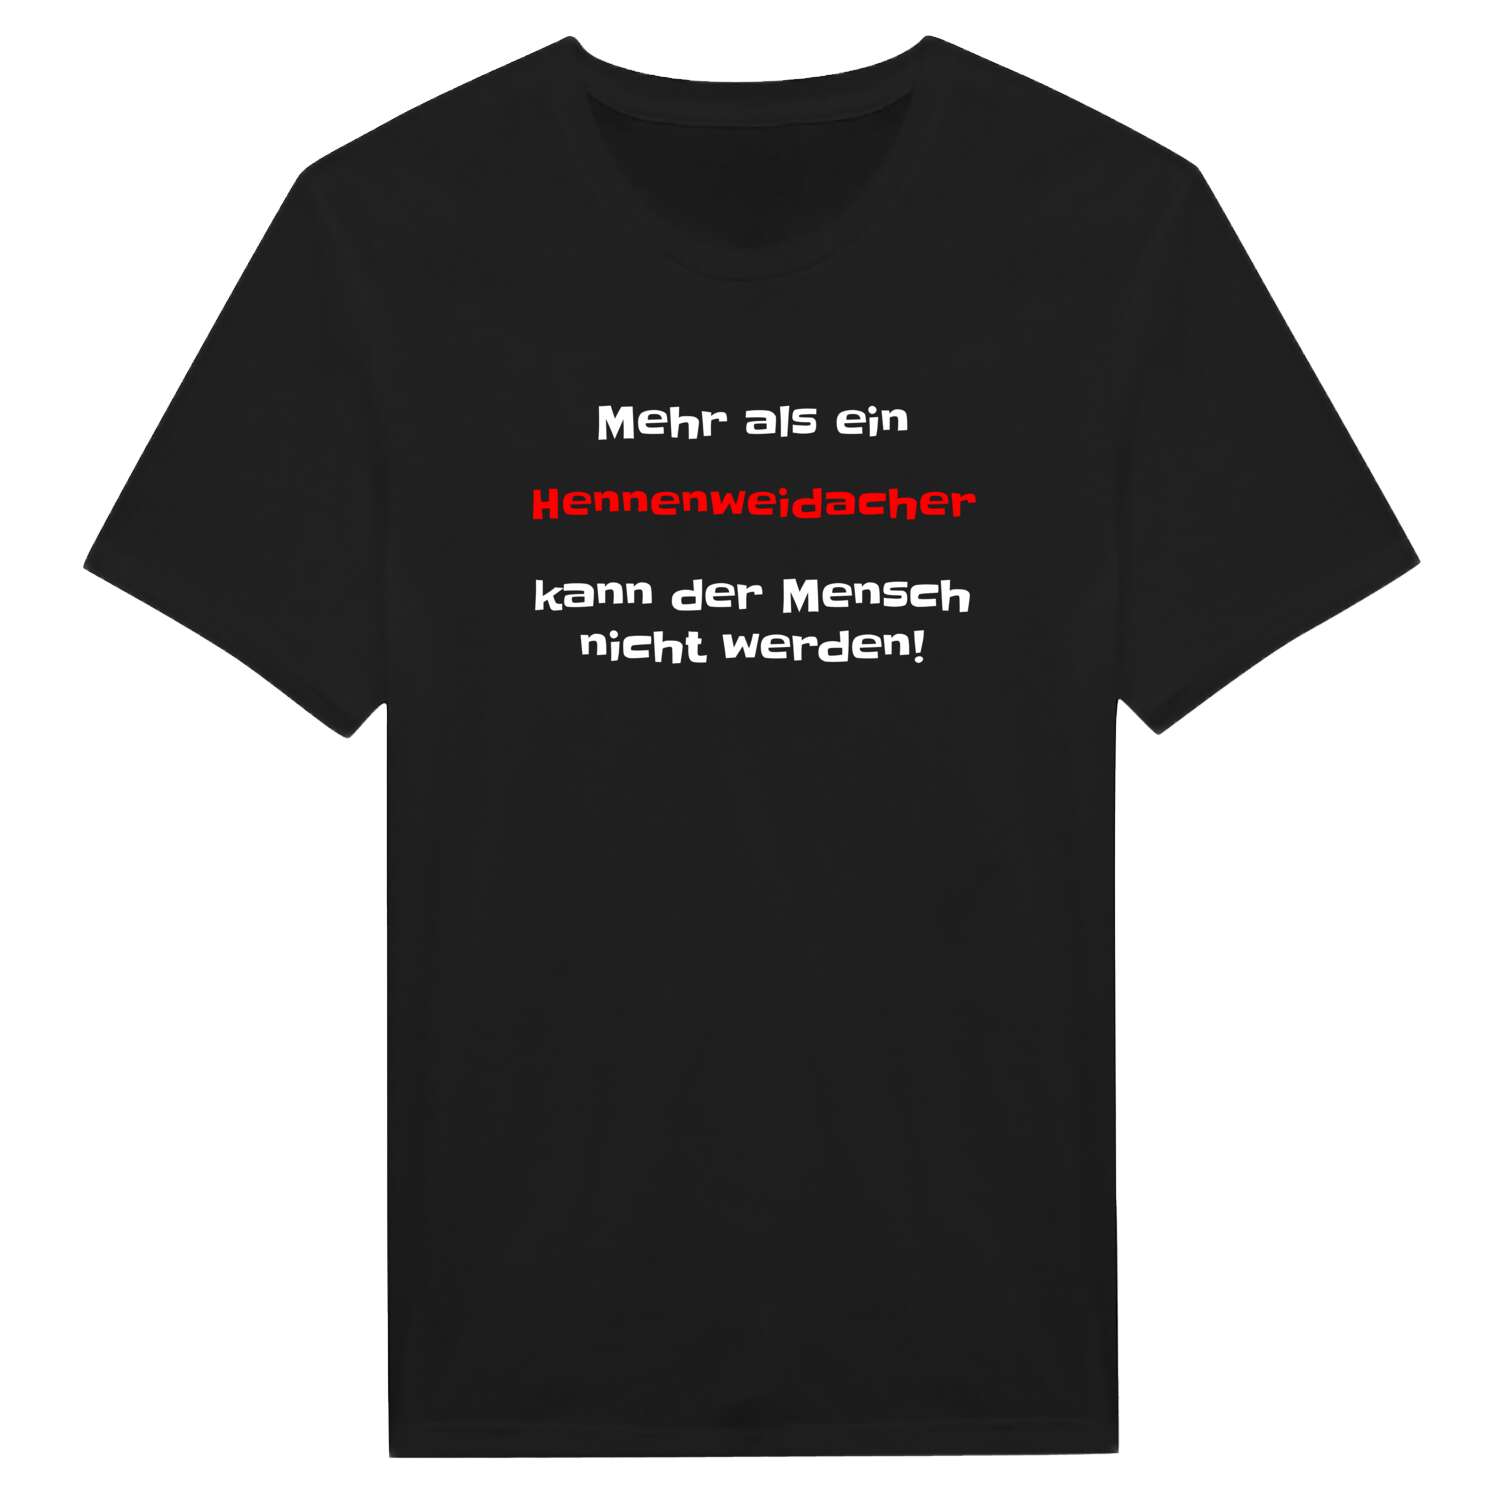 Hennenweidach T-Shirt »Mehr als ein«